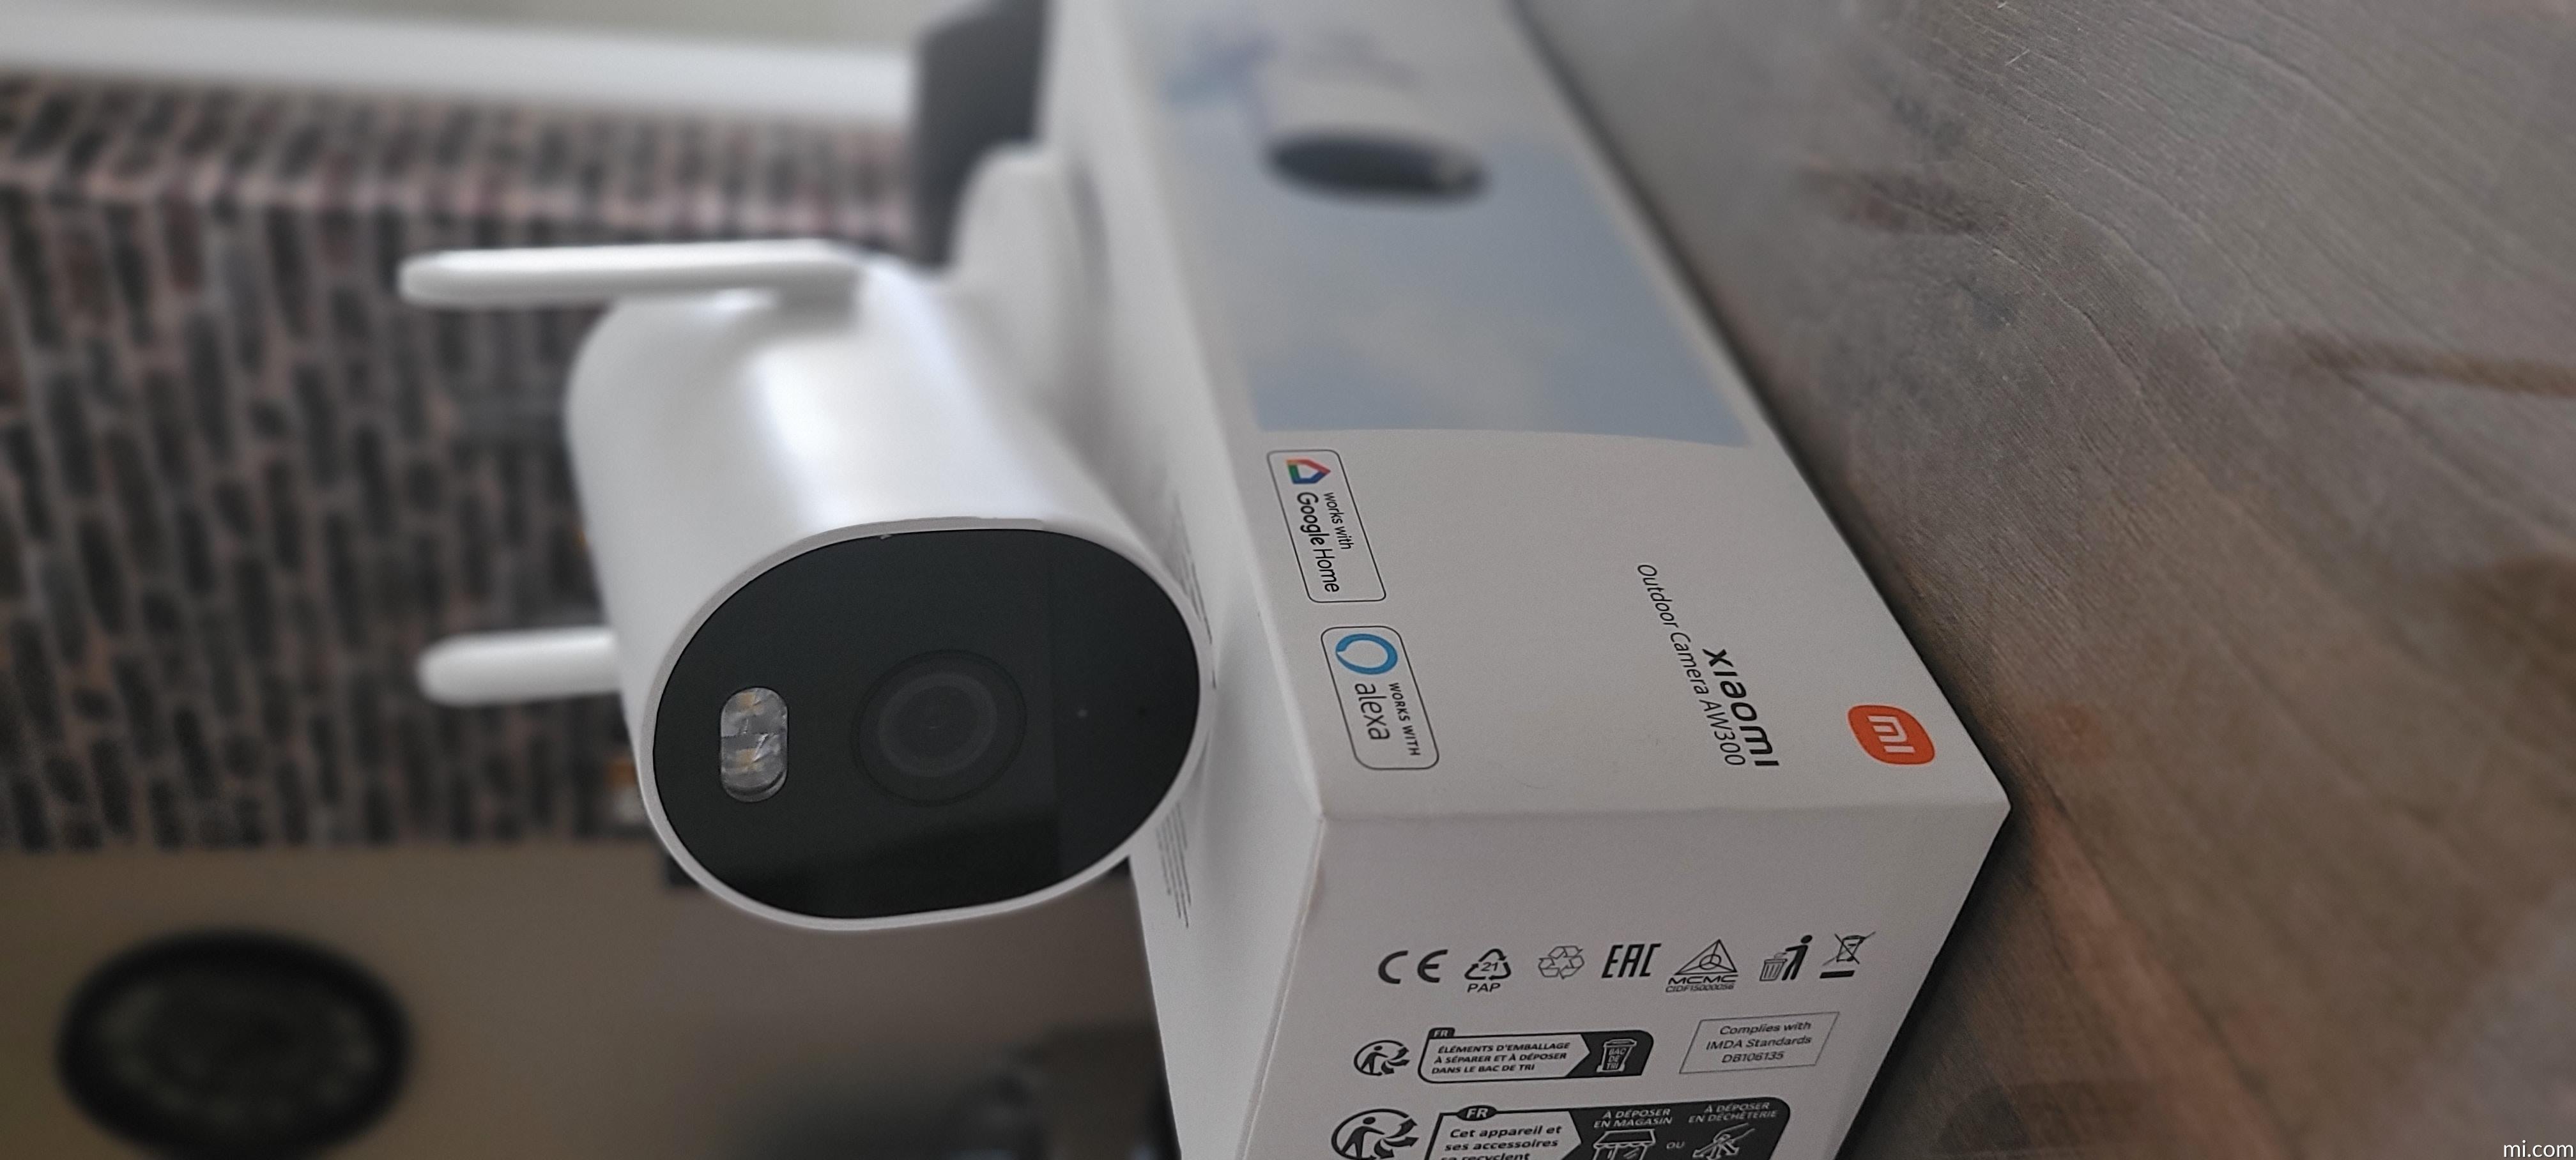 Caméra de Surveillance Filaire Outdoor Xiaomi AW300 –